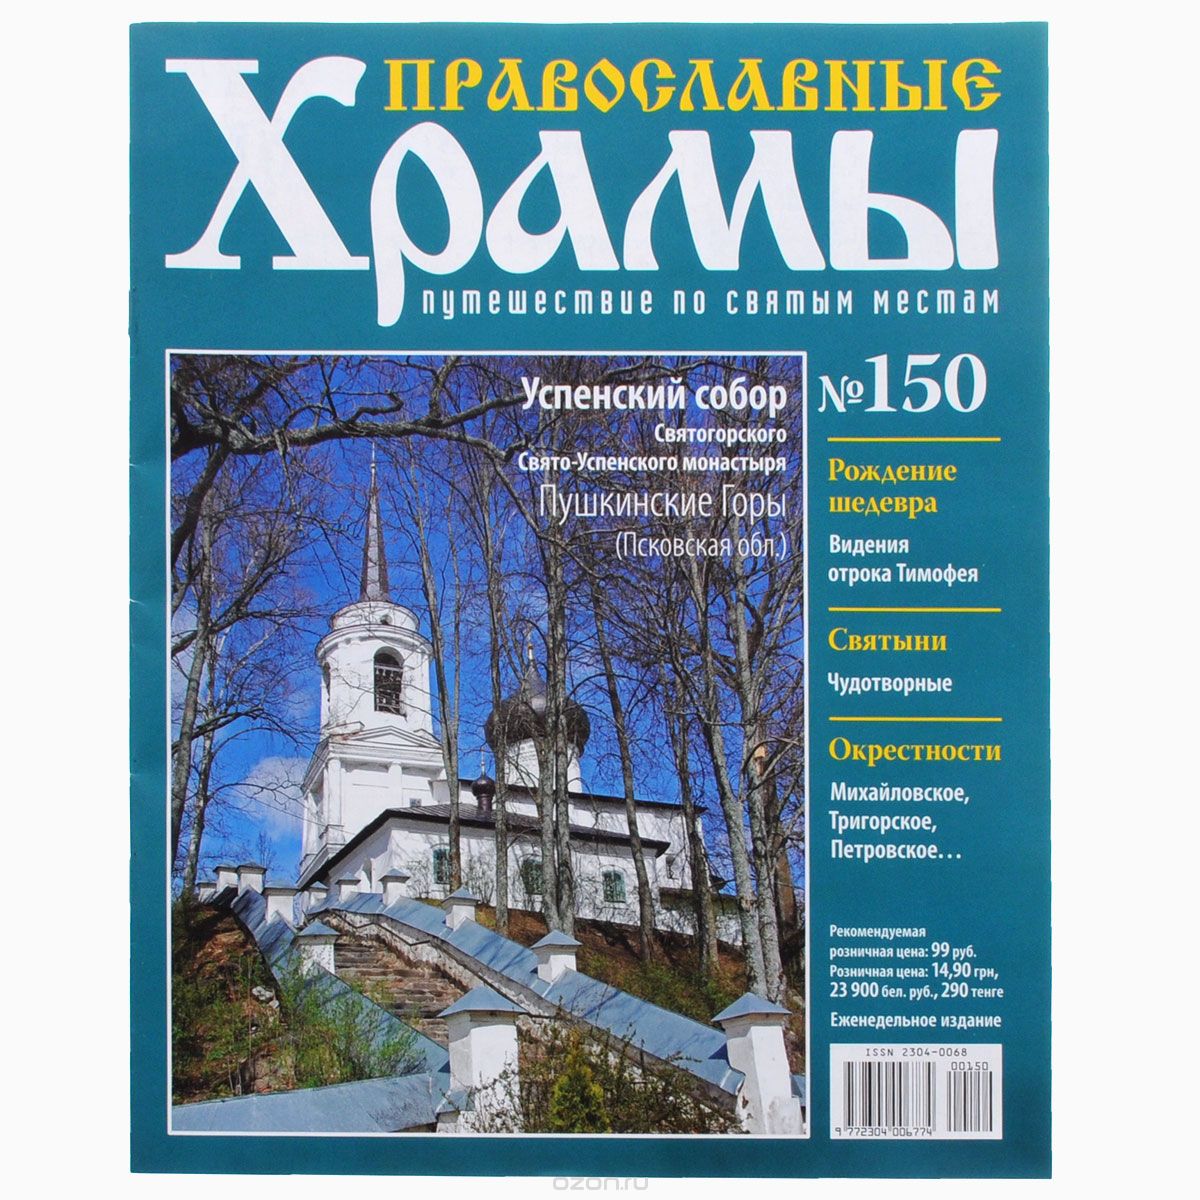 Скачать книгу "Журнал "Православные храмы. Путешествие по святым местам" № 150"